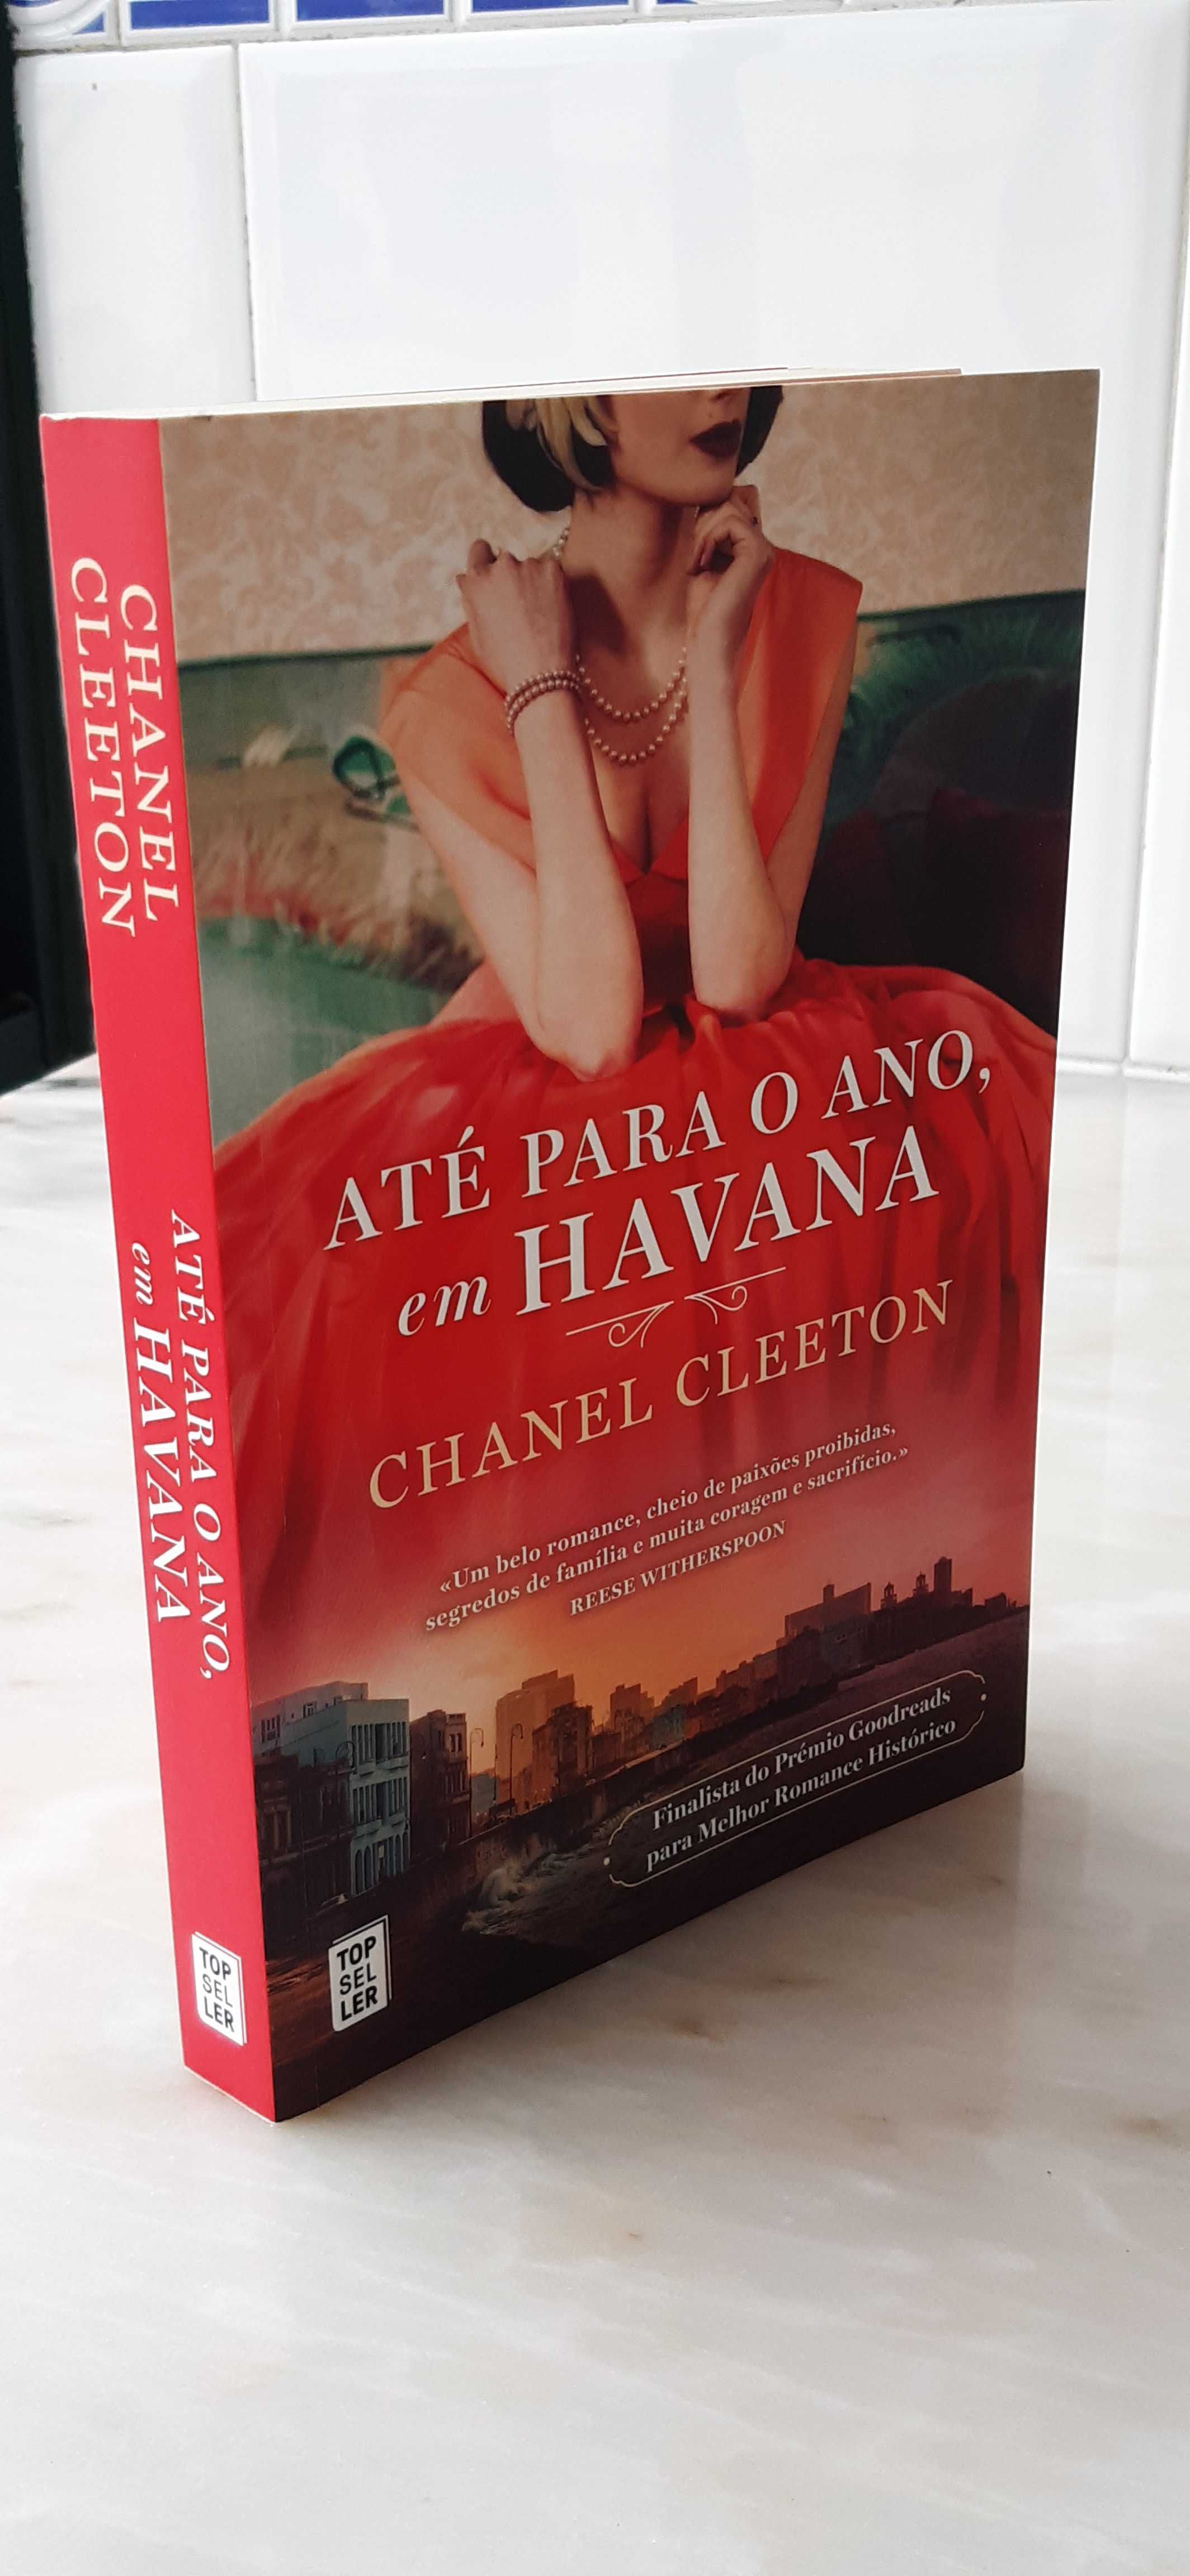 Livro «Até para o Ano, em Havana», Chanel Cleeton